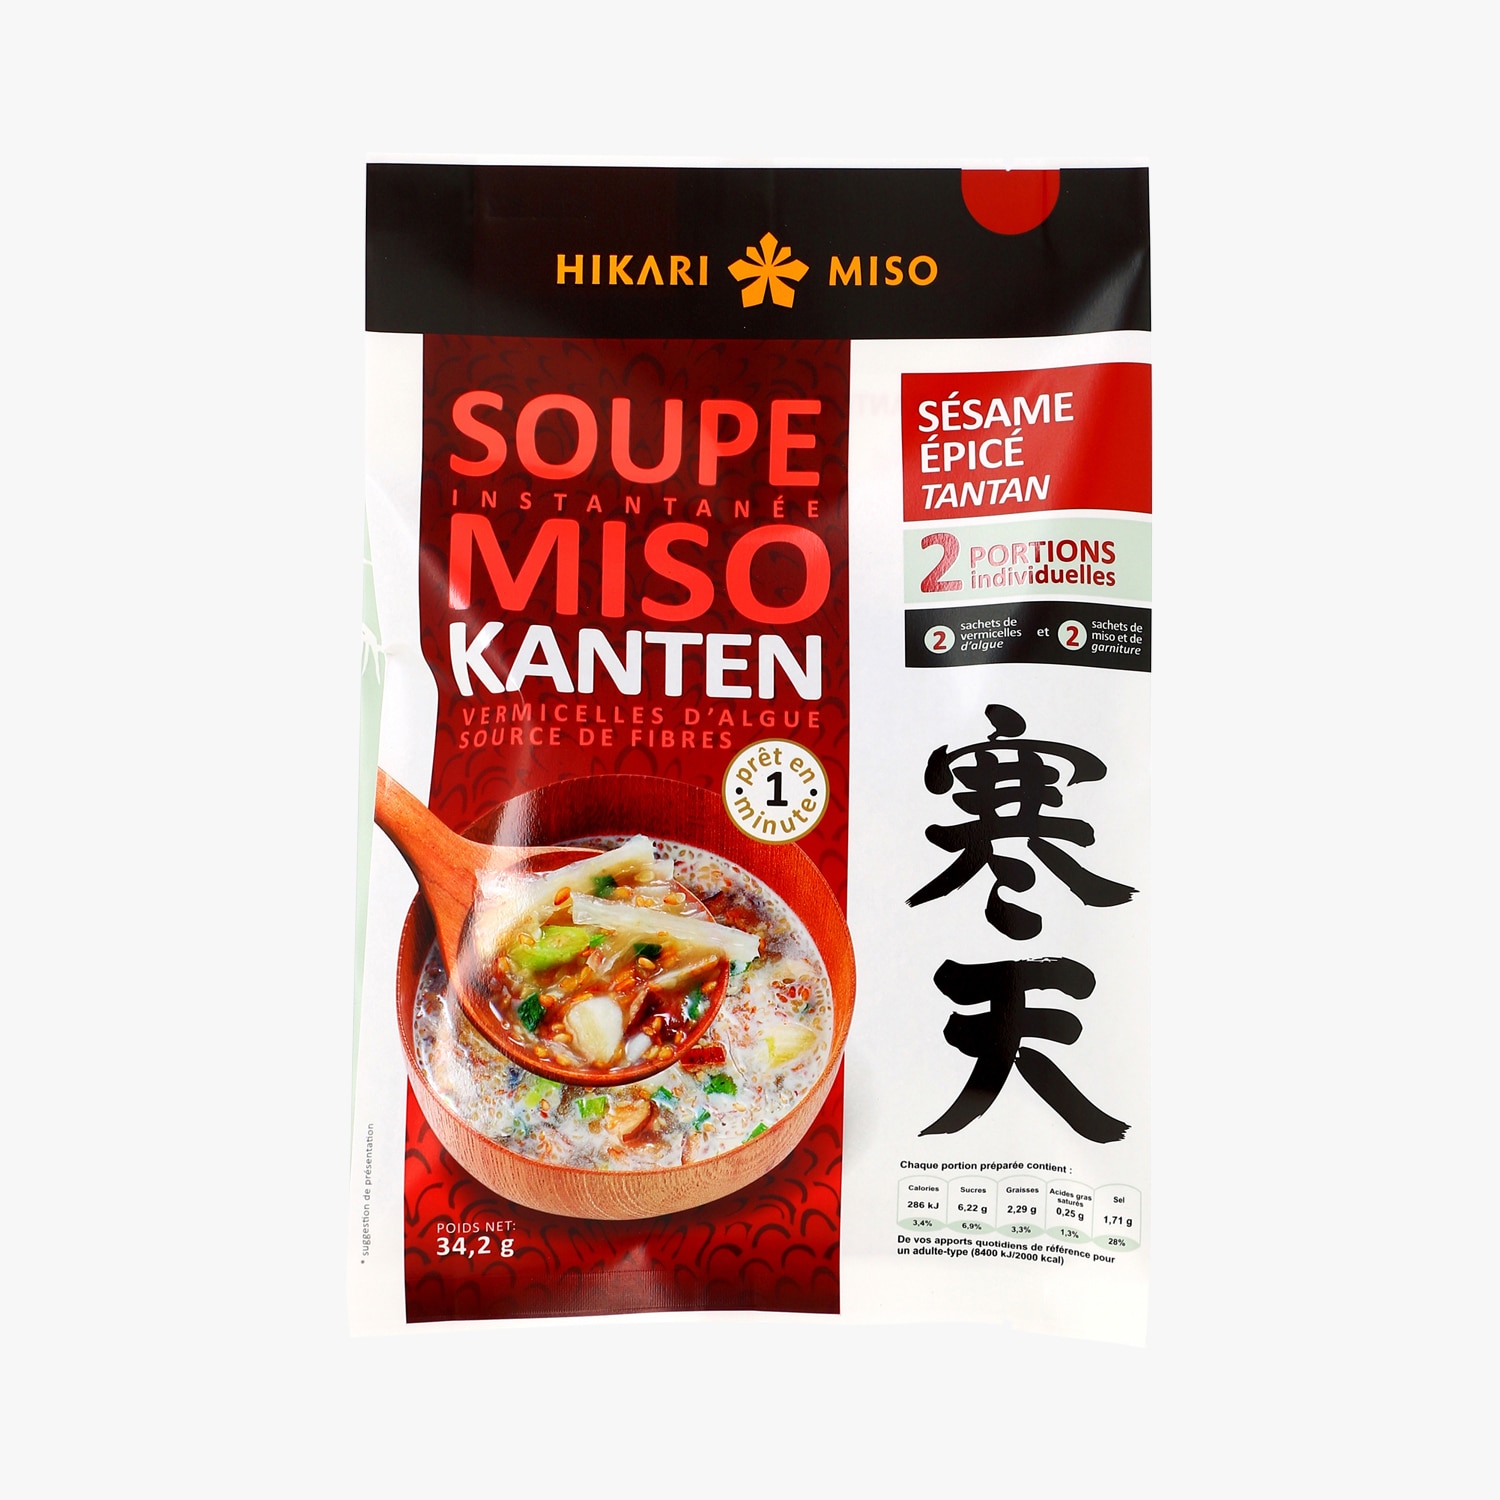 Authentique soupe miso meilleure qu'au restaurant